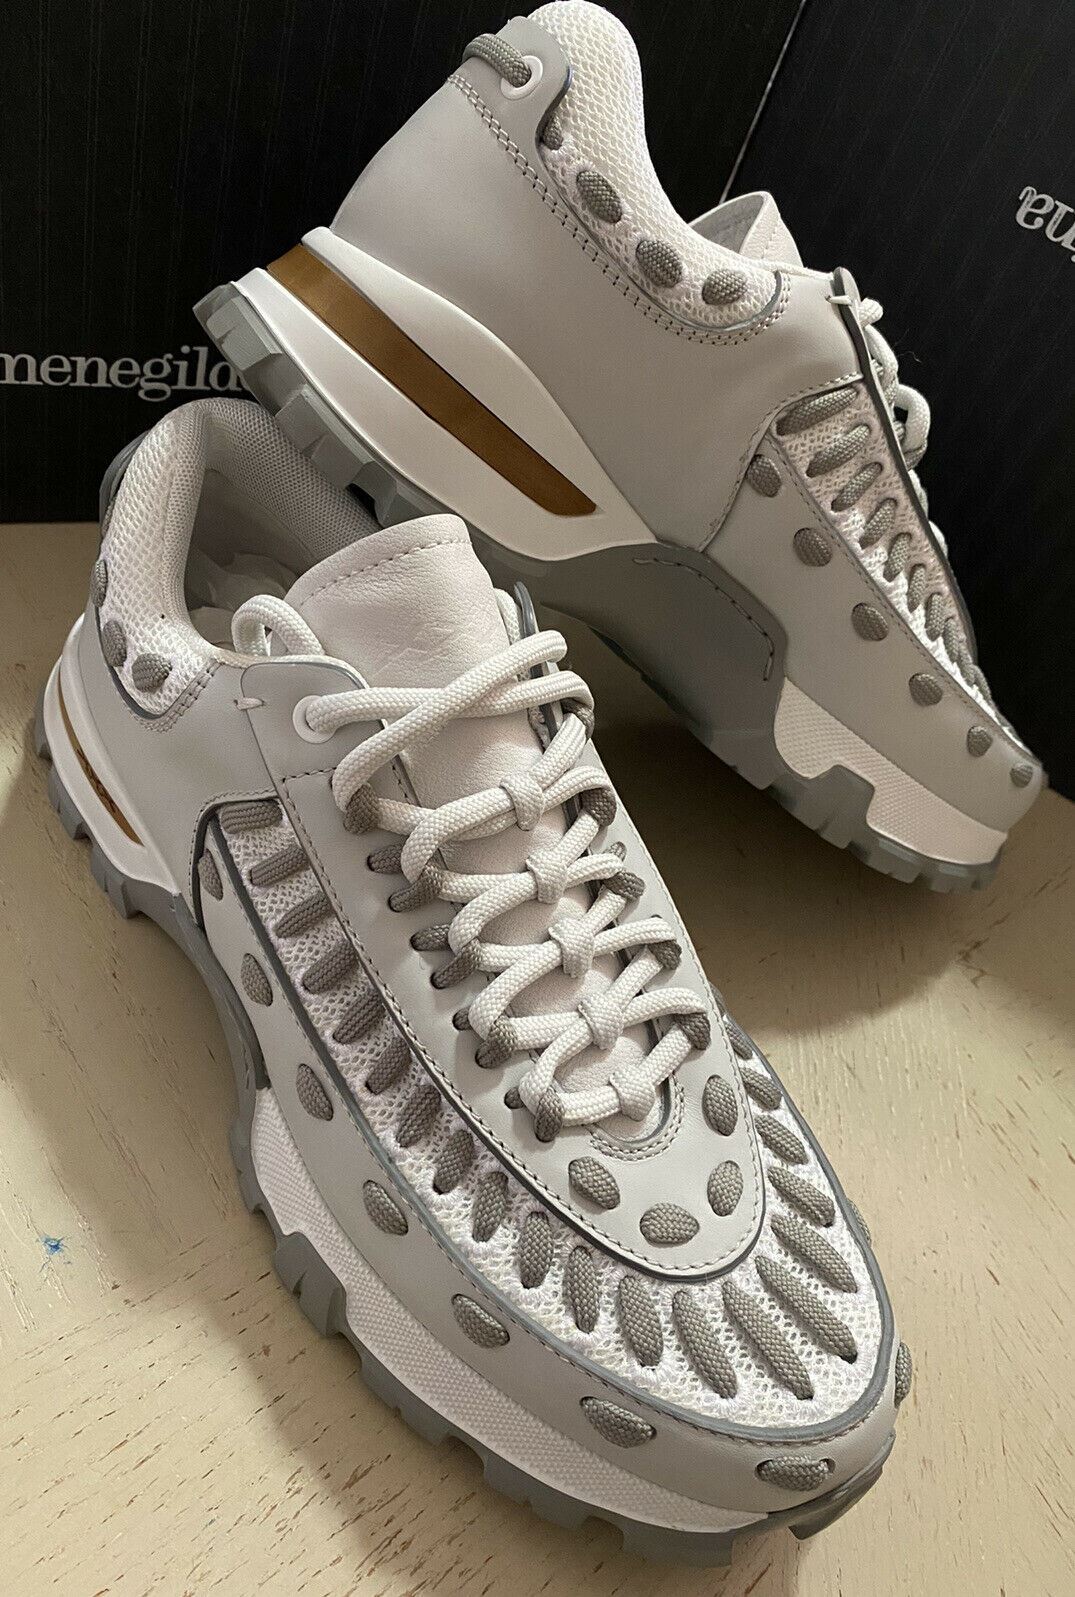 Neu $795 Ermenegildo Zegna Couture Leder-Sneakers Schuhe Weiß/Grau 9,5 US Ita